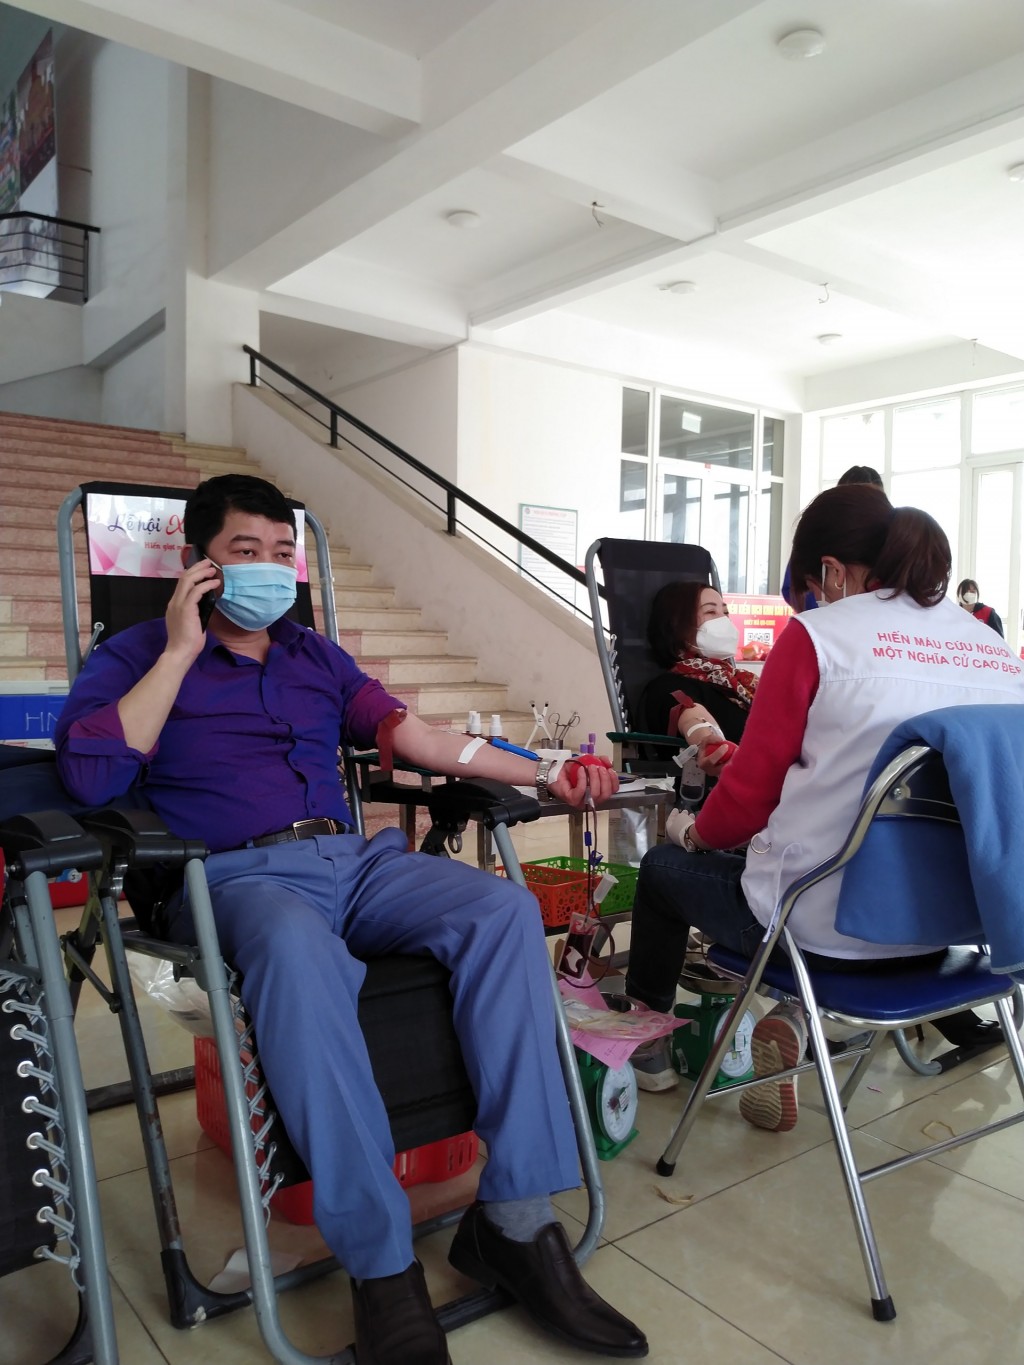 Bên cạnh các bạn Đoàn viên, nhiều cán bộ viên chức của huyện Mê Linh cũng tham gia hiến máu tình nguyện